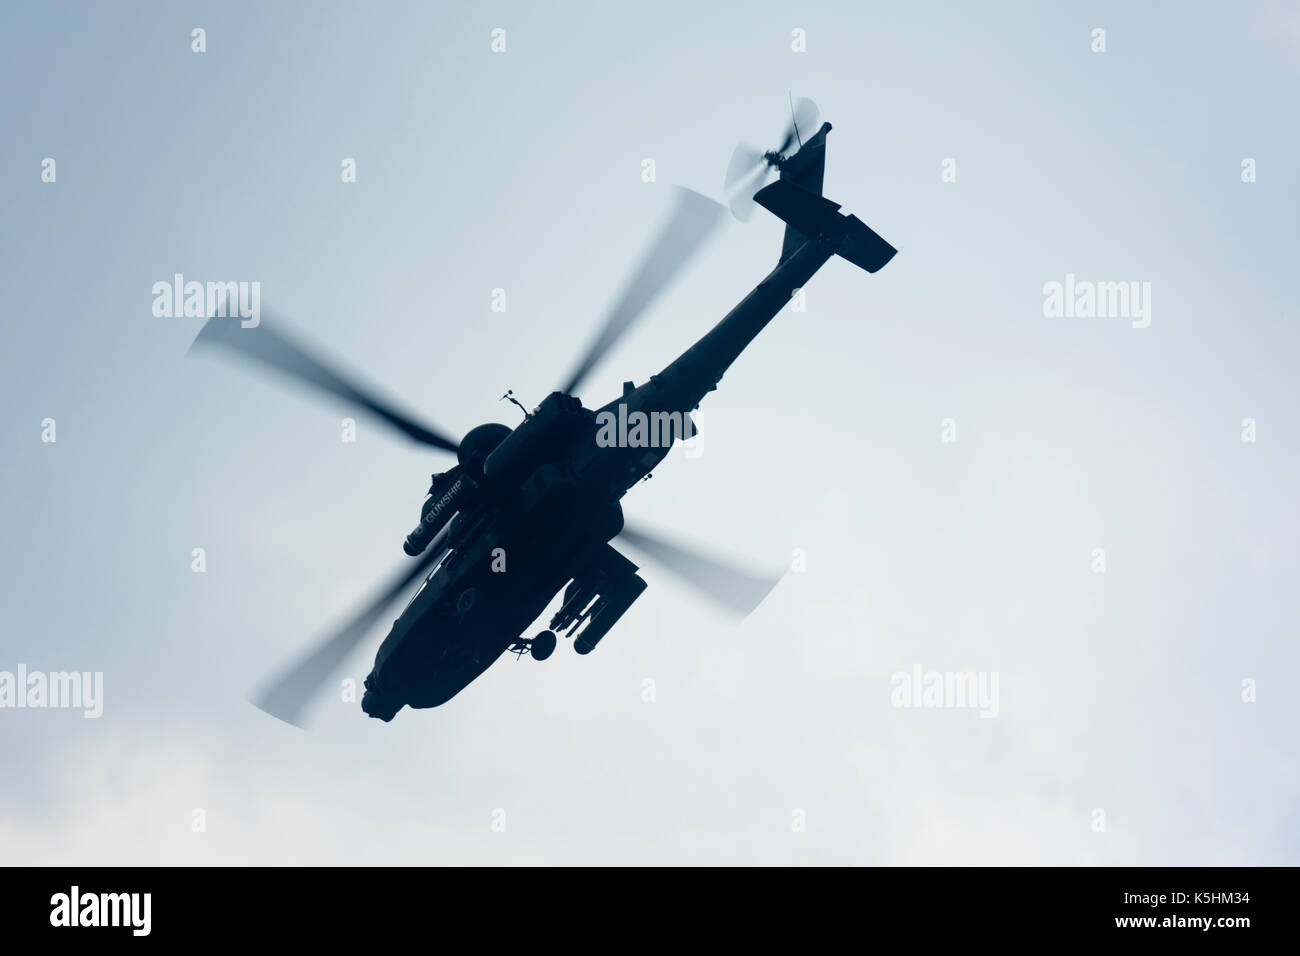 Boeing AH-64 Apache hélicoptère donnant un affichage. Banque D'Images